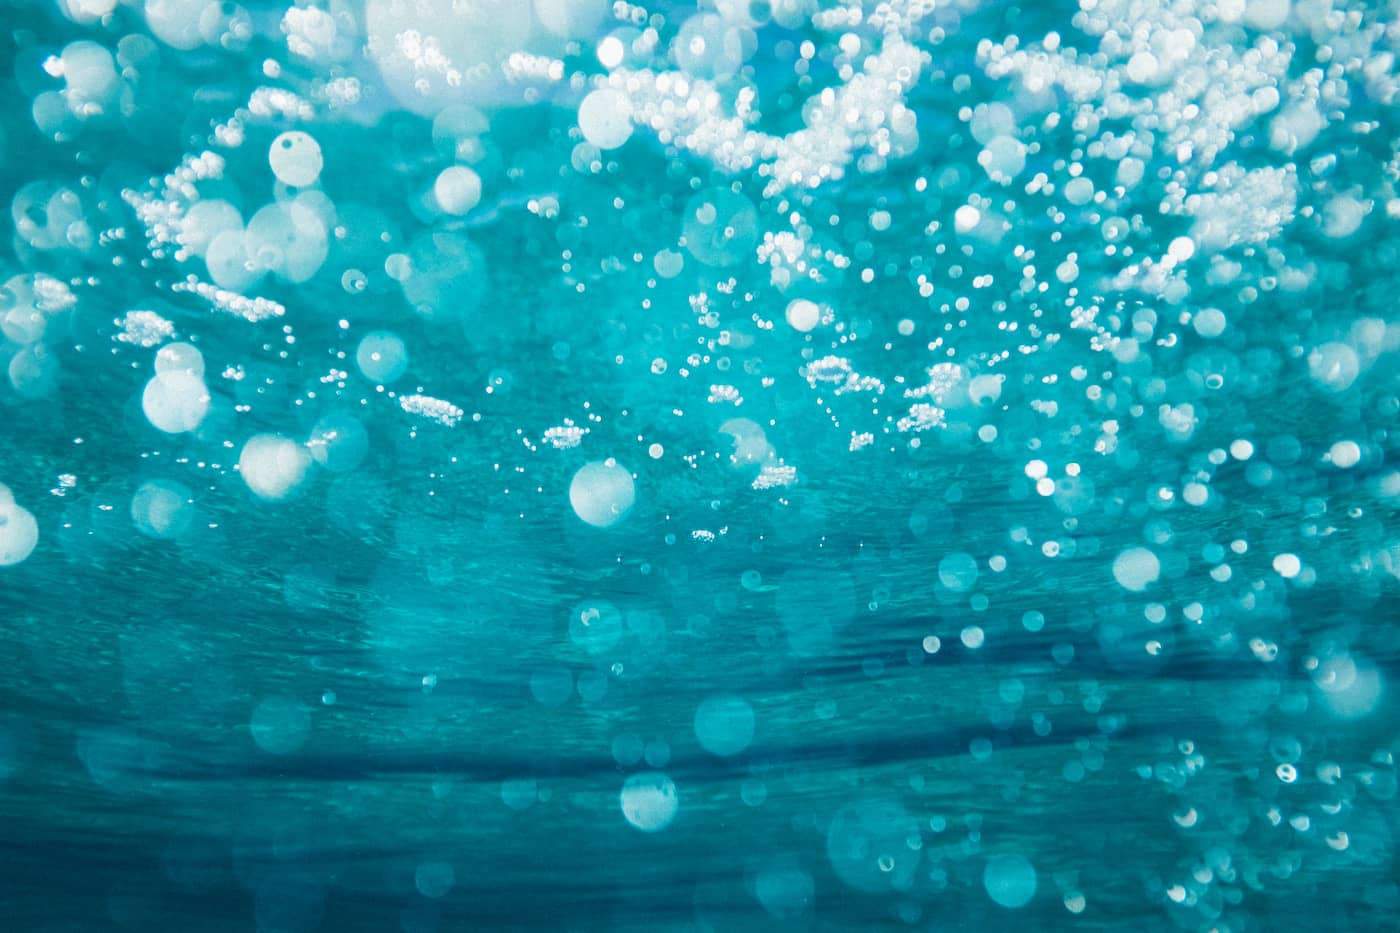 Bubbles in the ocean